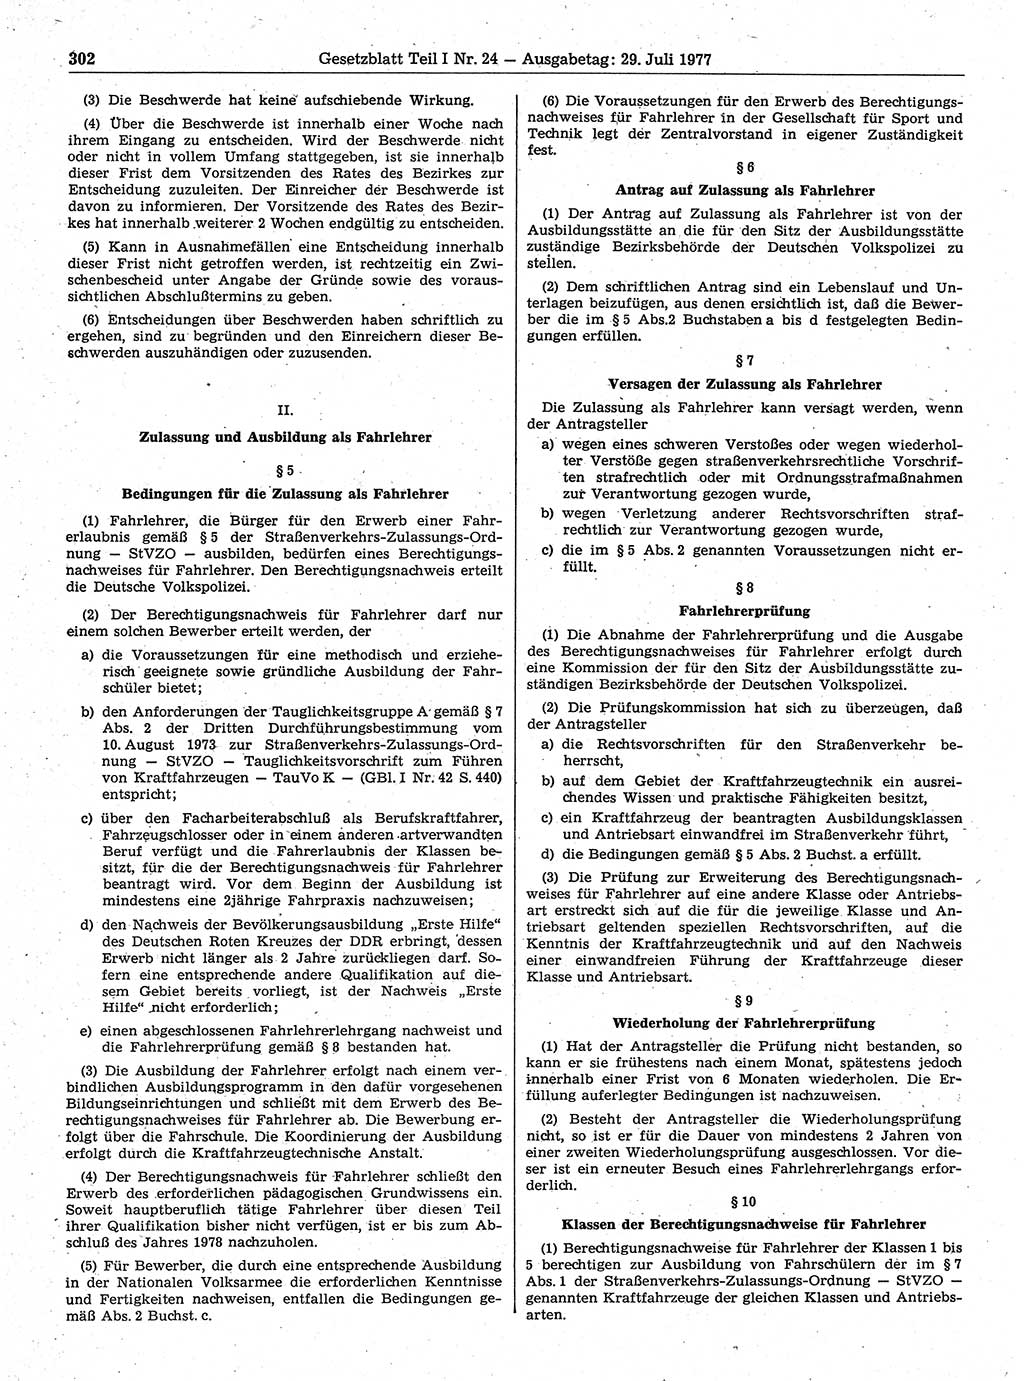 Gesetzblatt (GBl.) der Deutschen Demokratischen Republik (DDR) Teil Ⅰ 1977, Seite 302 (GBl. DDR Ⅰ 1977, S. 302)